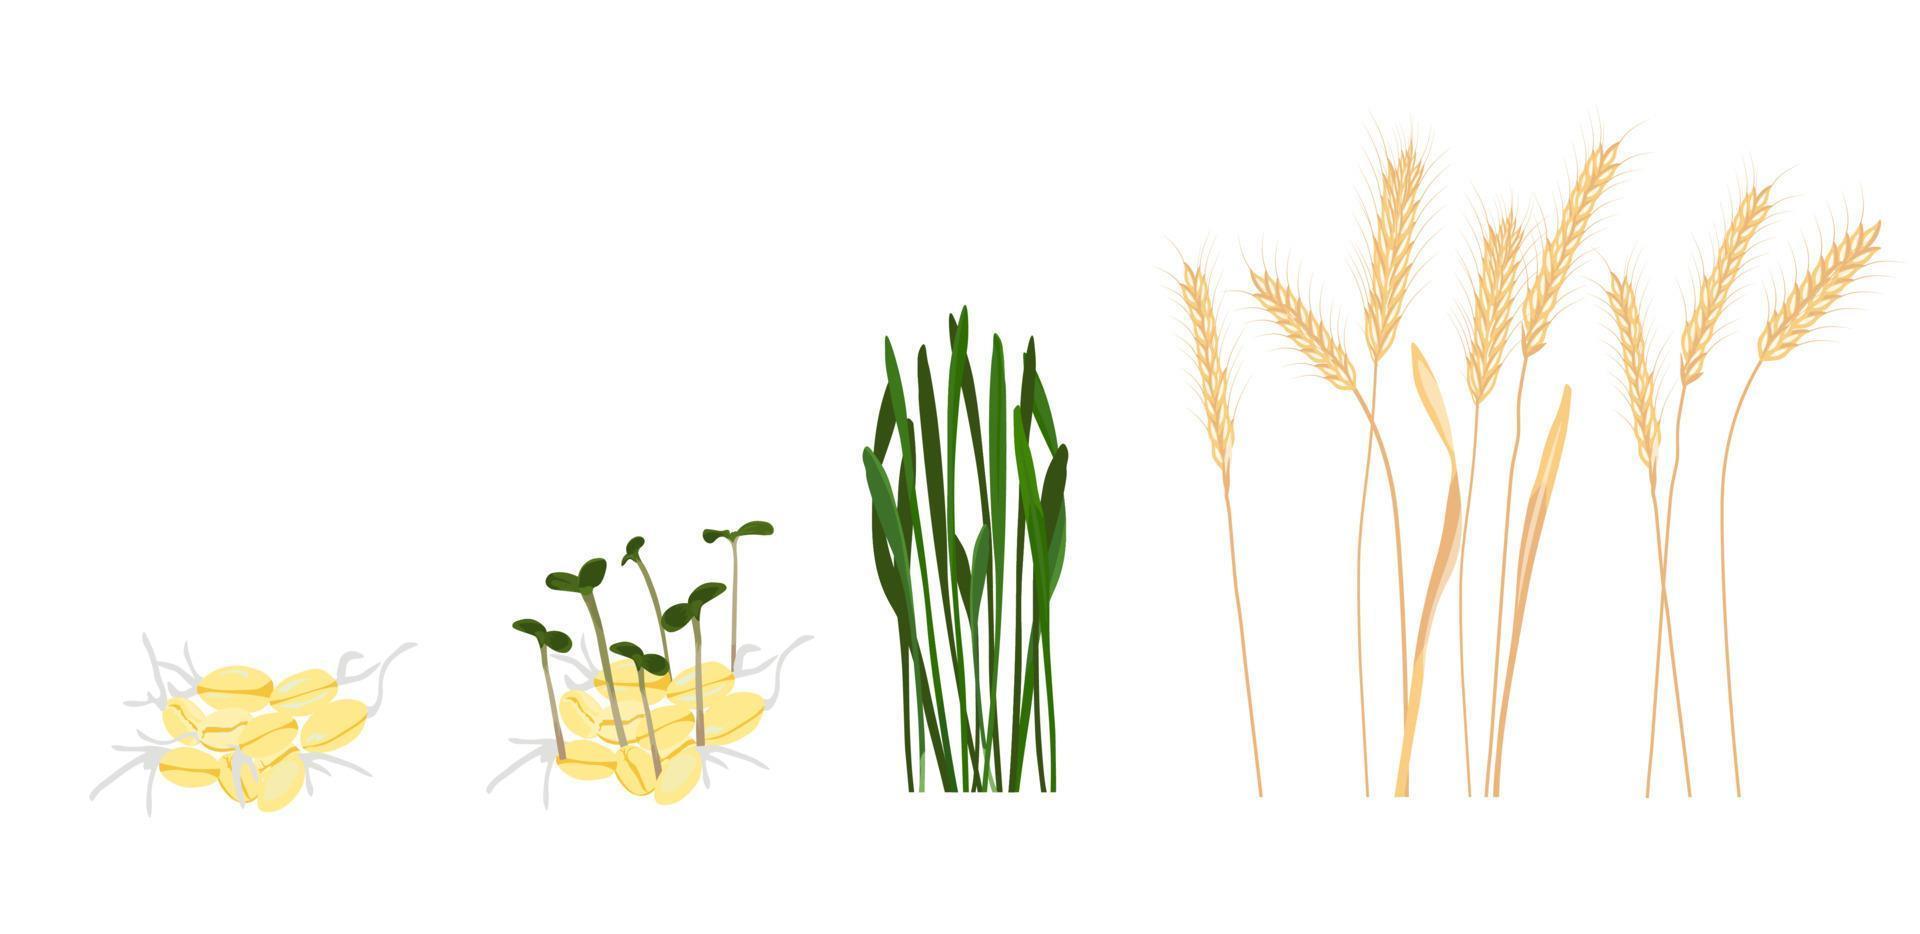 illustration de stock de vecteur de stade de croissance du blé. cycle de croissance d'un plant de blé. isolé sur fond blanc.